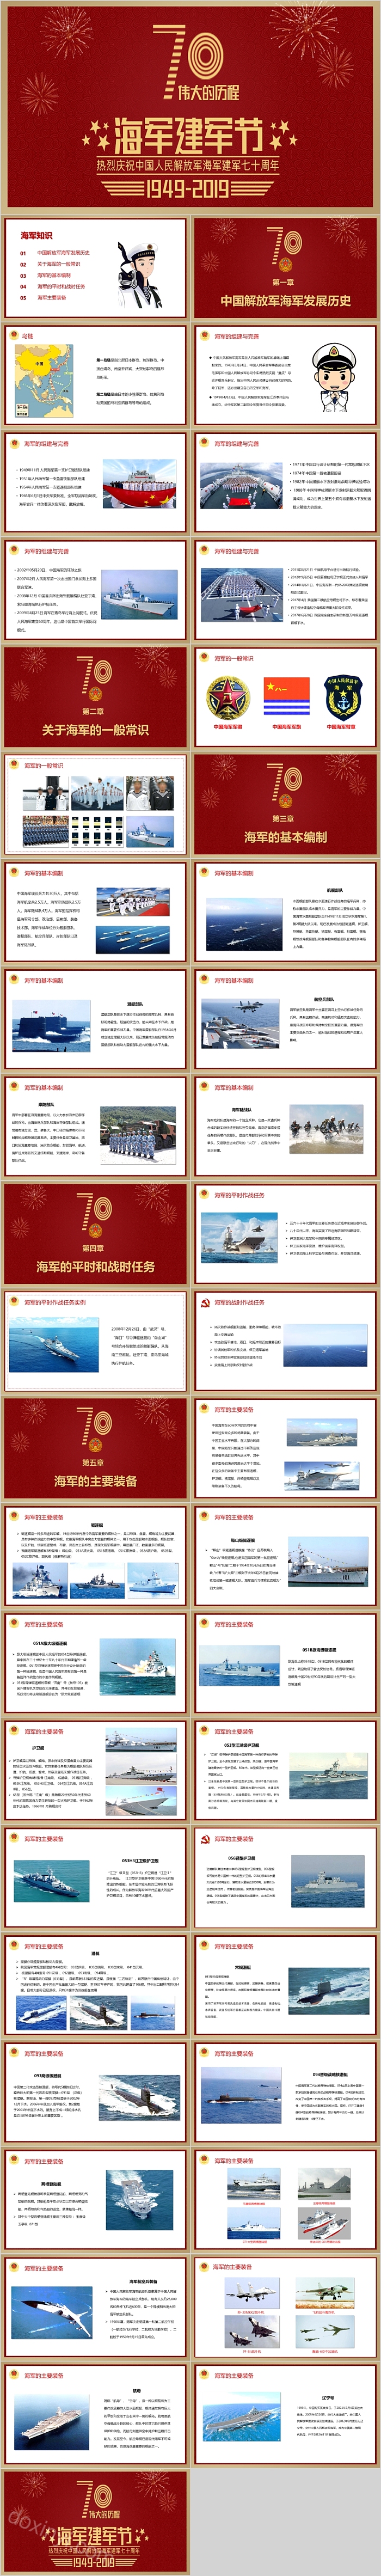 海军建军节热烈庆祝中国人民解放军海军建军七十周年